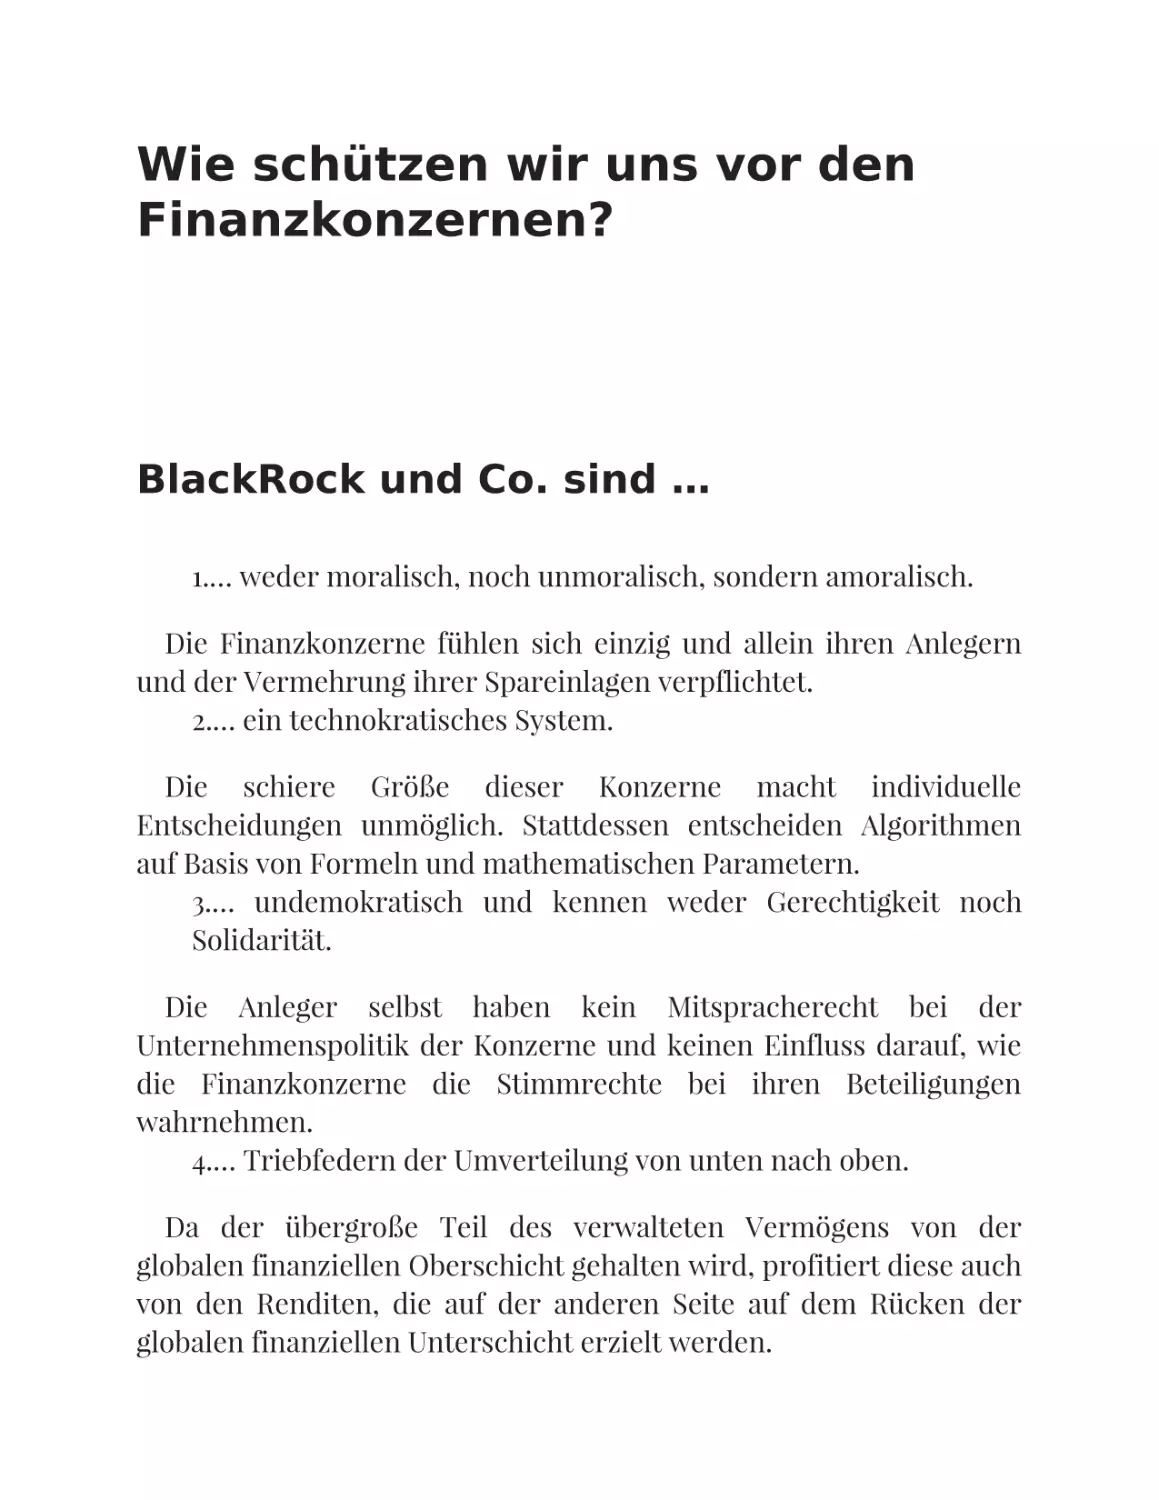 Wie schützen wir uns vor den Finanzkonzernen?
BlackRock und Co. sind …